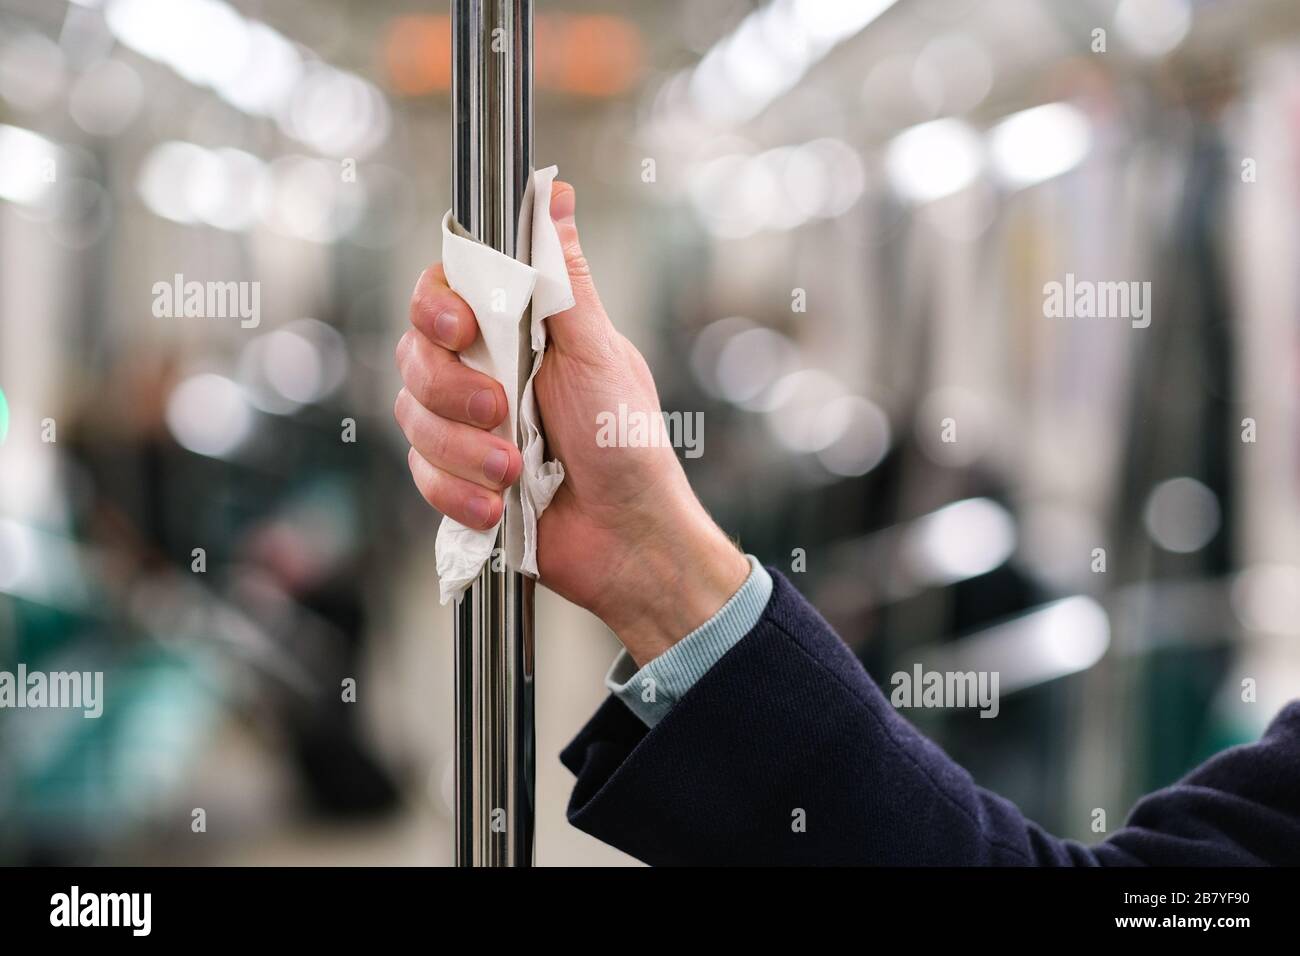 Nahaufnahme der Hand des Mannes hält einen Handlauf im öffentlichen Verkehr/U-Bahn durch eine Serviette, um sich vor dem Kontakt mit Viren, Keimen während eines coron zu schützen Stockfoto